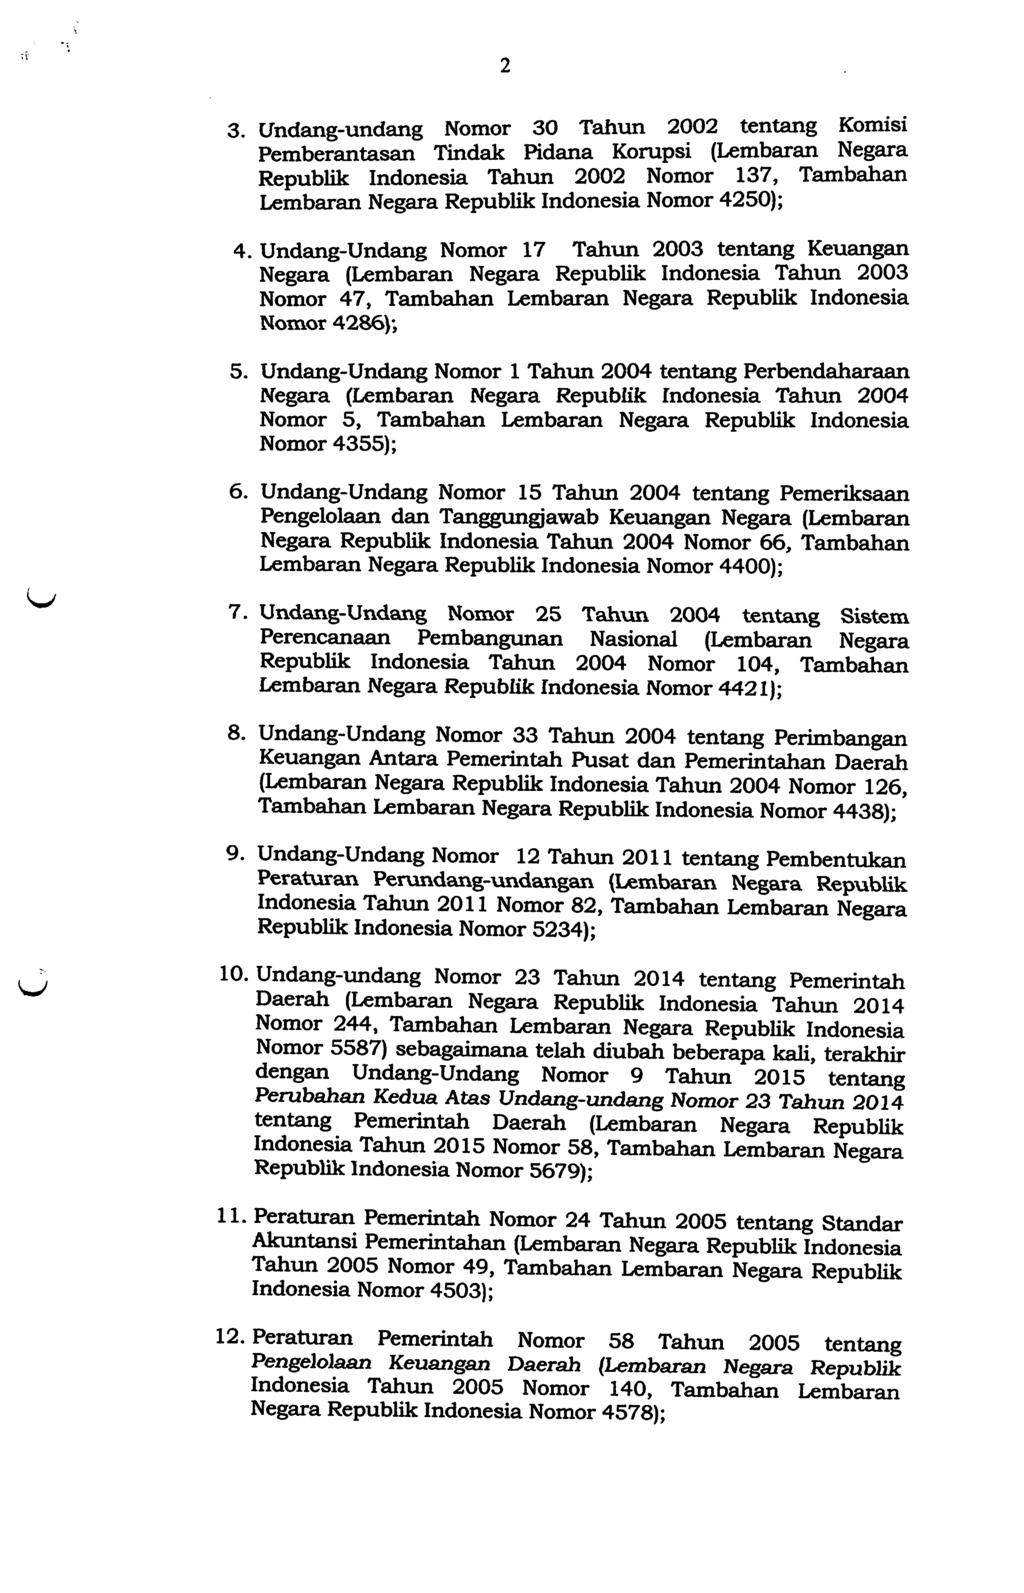 3. Undang-undang Nomor 30 Tahun 2002 tentang Komisi Pemberantasan Tindak Pidana Korupsi (Lembaran Negara Republik Indonesia Tahun 2002 Nomor 137, Tambahan Lembaran Negara Republik Indonesia Nomor